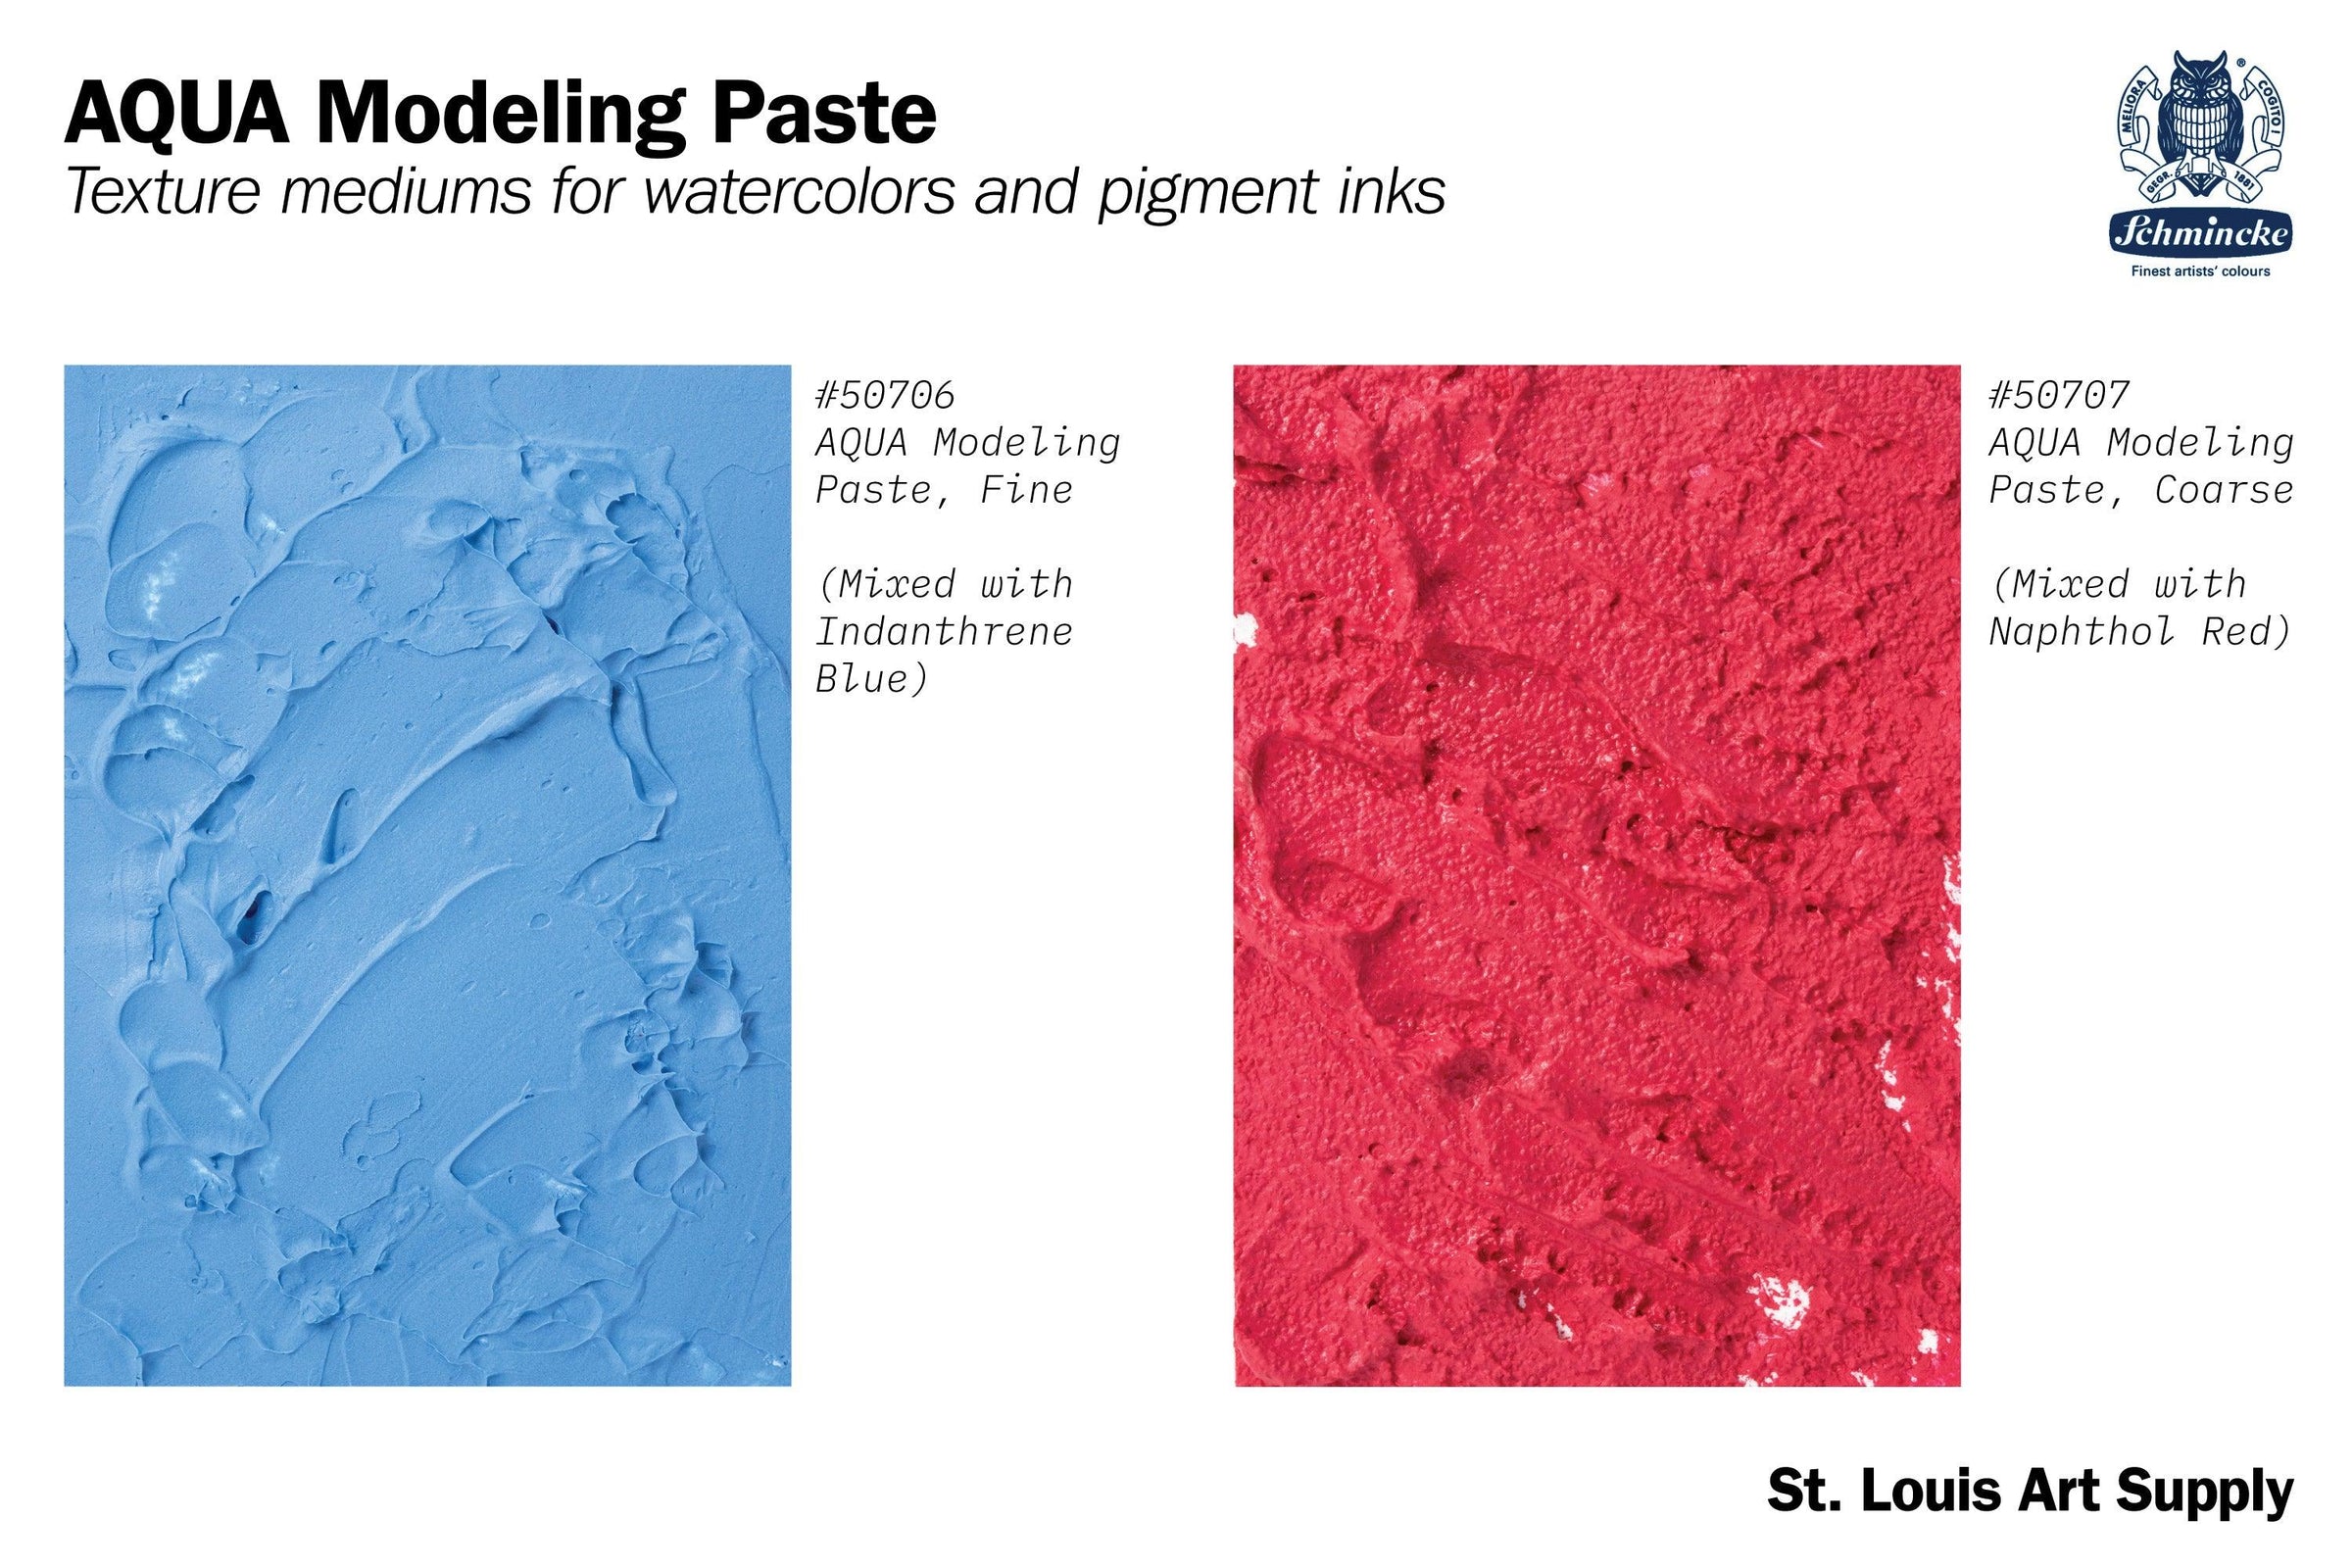 Schmincke AQUA Modeling Paste, 100 mL, Coarse – St. Louis Art Supply